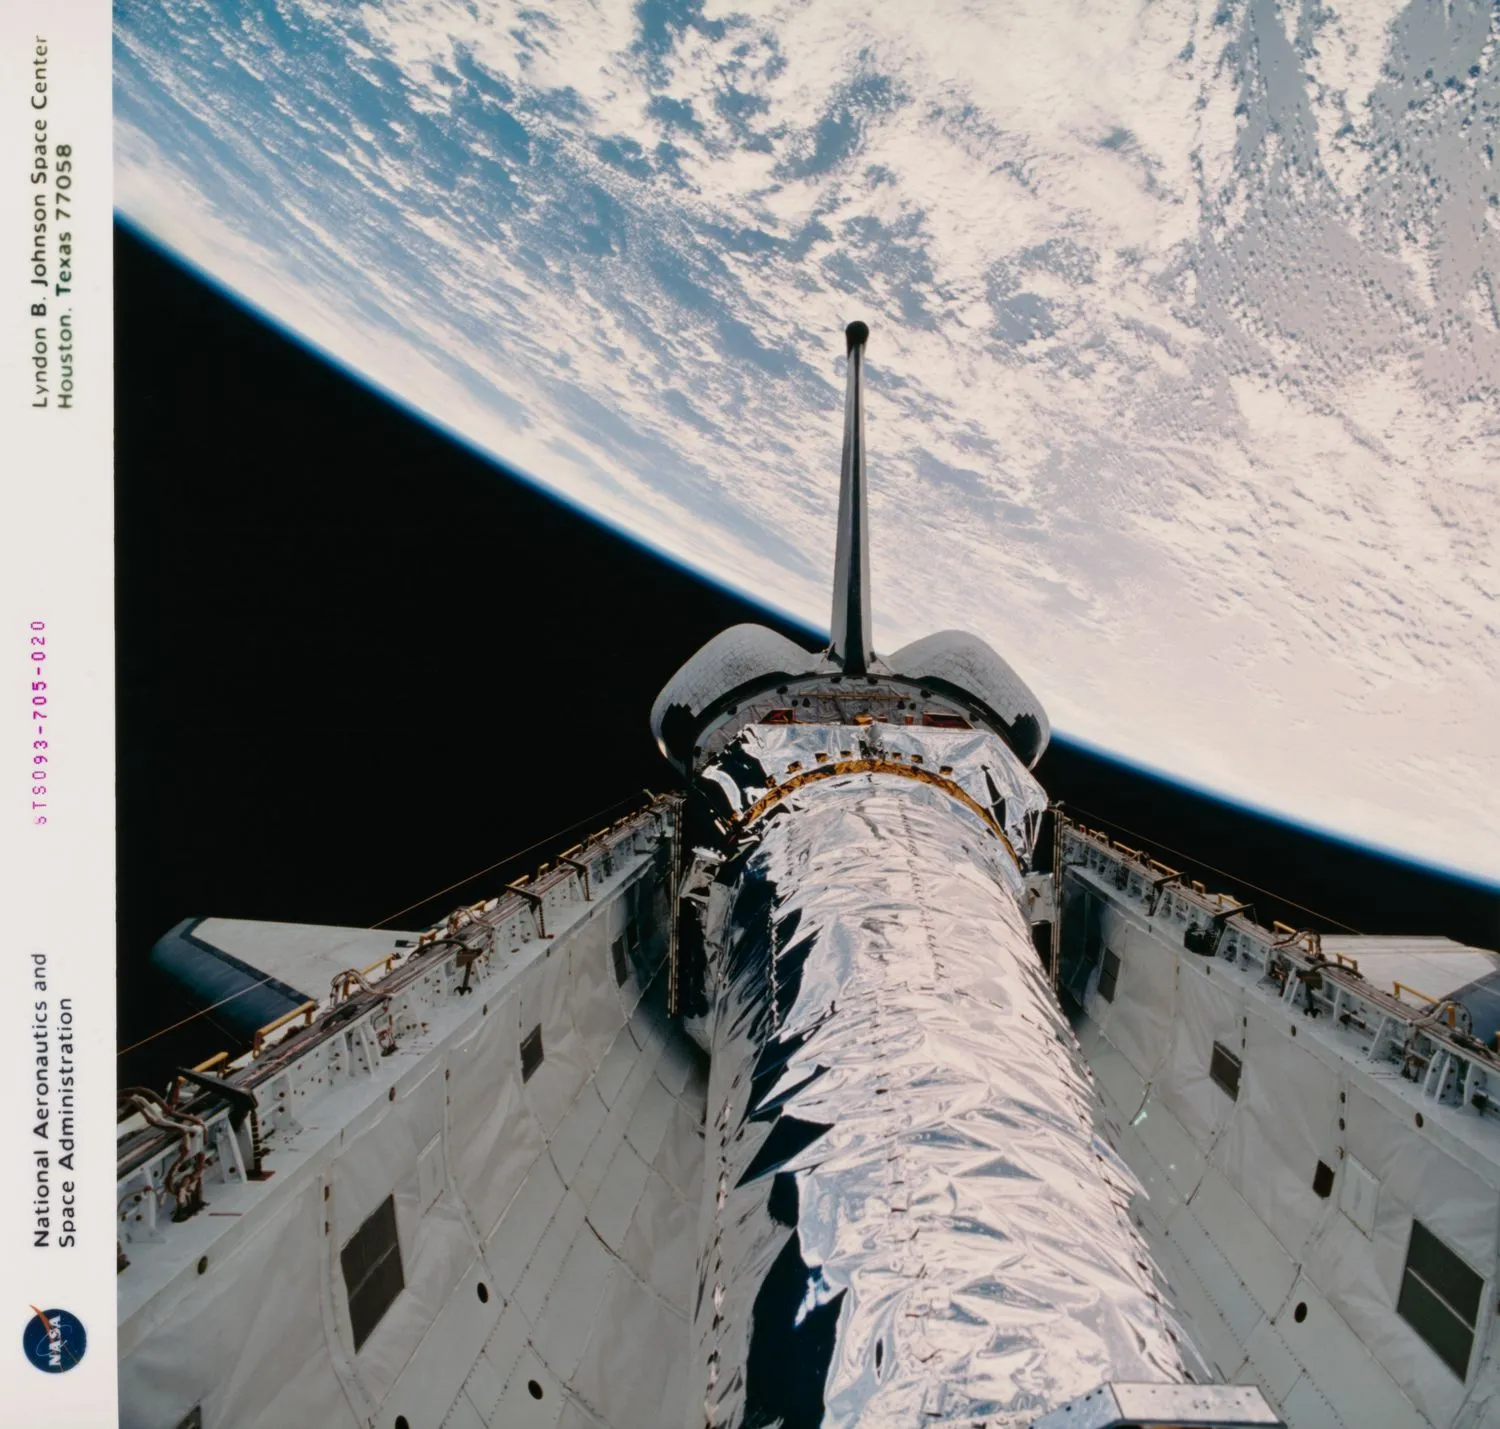 ein glänzendes Raumschiff ruht im weißen Frachtraum eines Space Shuttles mit einer großen Fläche der Erde im Hintergrund.